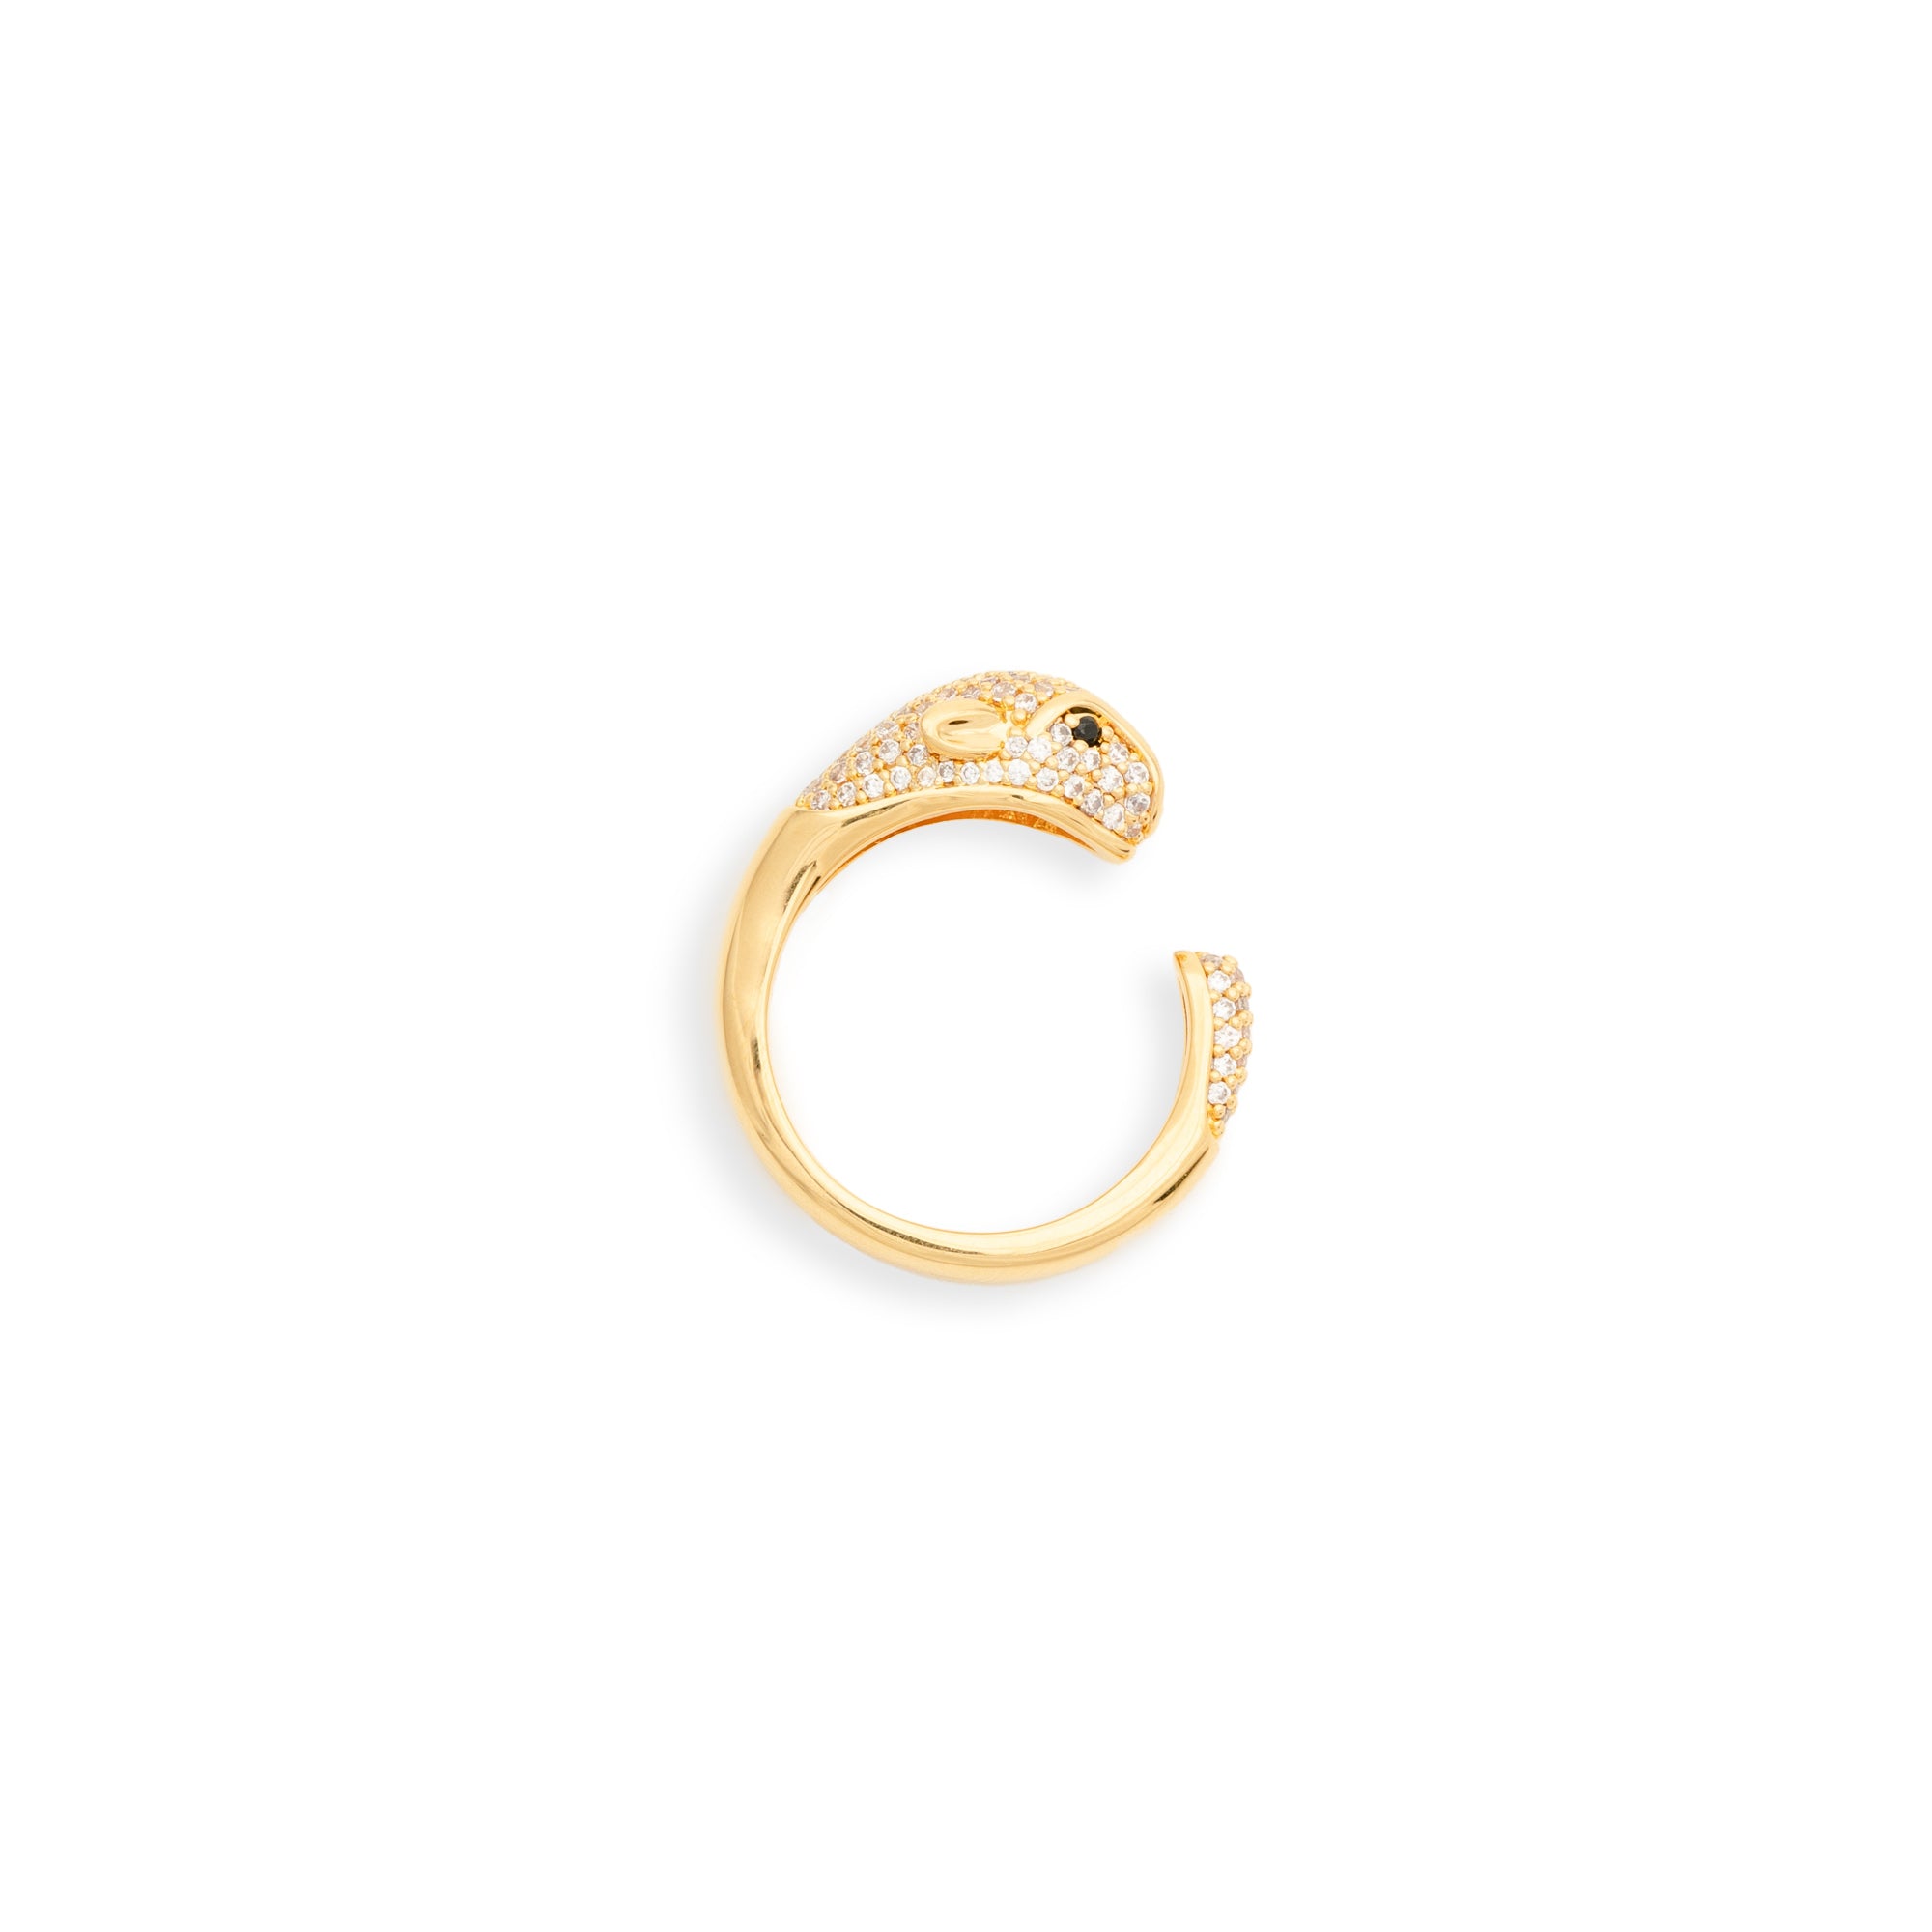 Buy quality 916 Gold Jaguar Rings in Ahmedabad